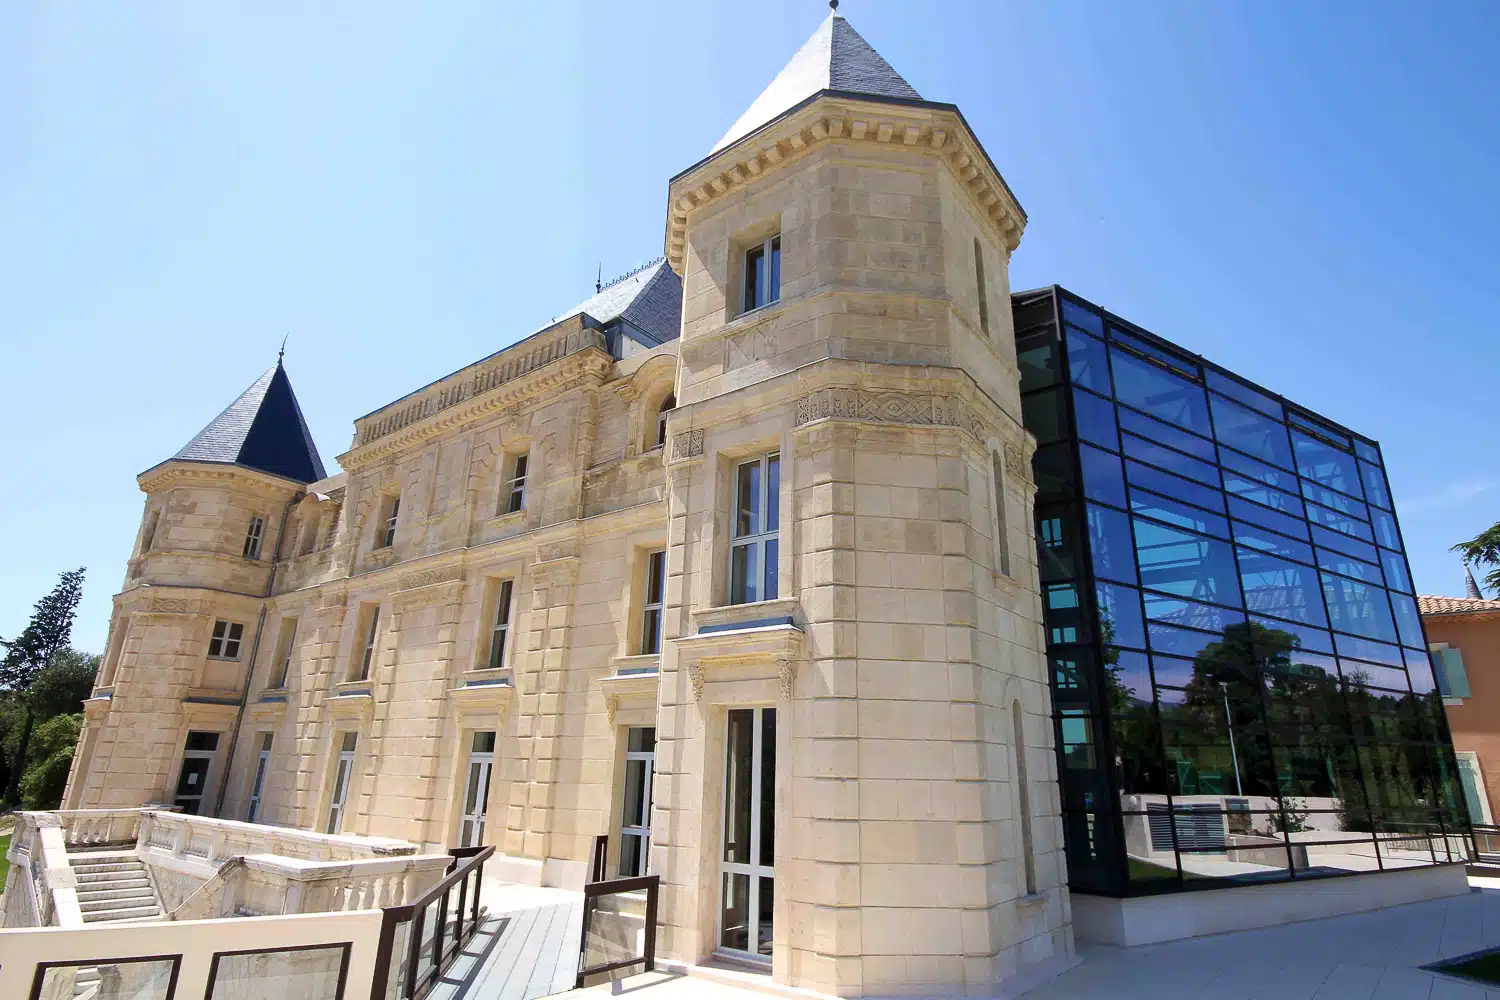 Pagnol, L&rsquo;affaire du château de la Buzine s&rsquo;invite dans la visite présidentielle, Made in Marseille